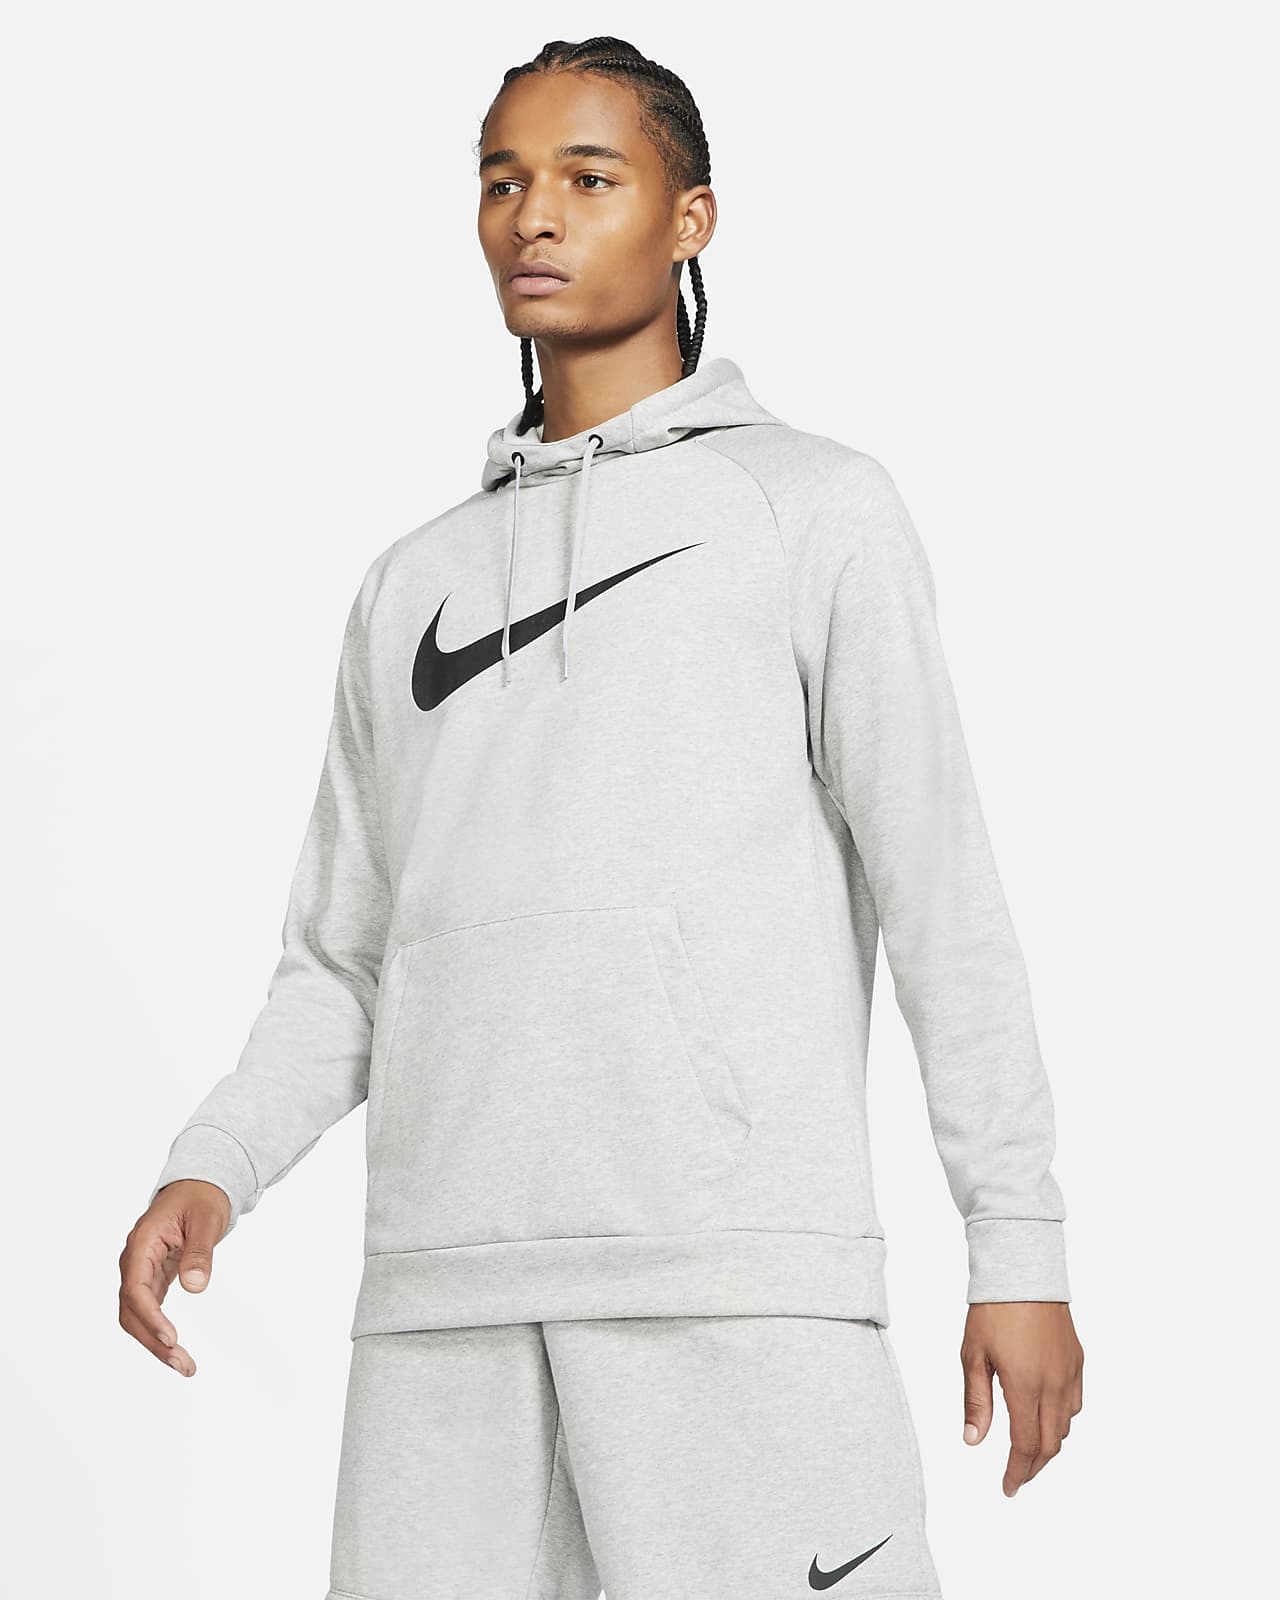 Soberano Tareas del hogar atractivo Nike Dri-FIT Sudadera con capucha de entrenamiento - Hombre. Nike ES